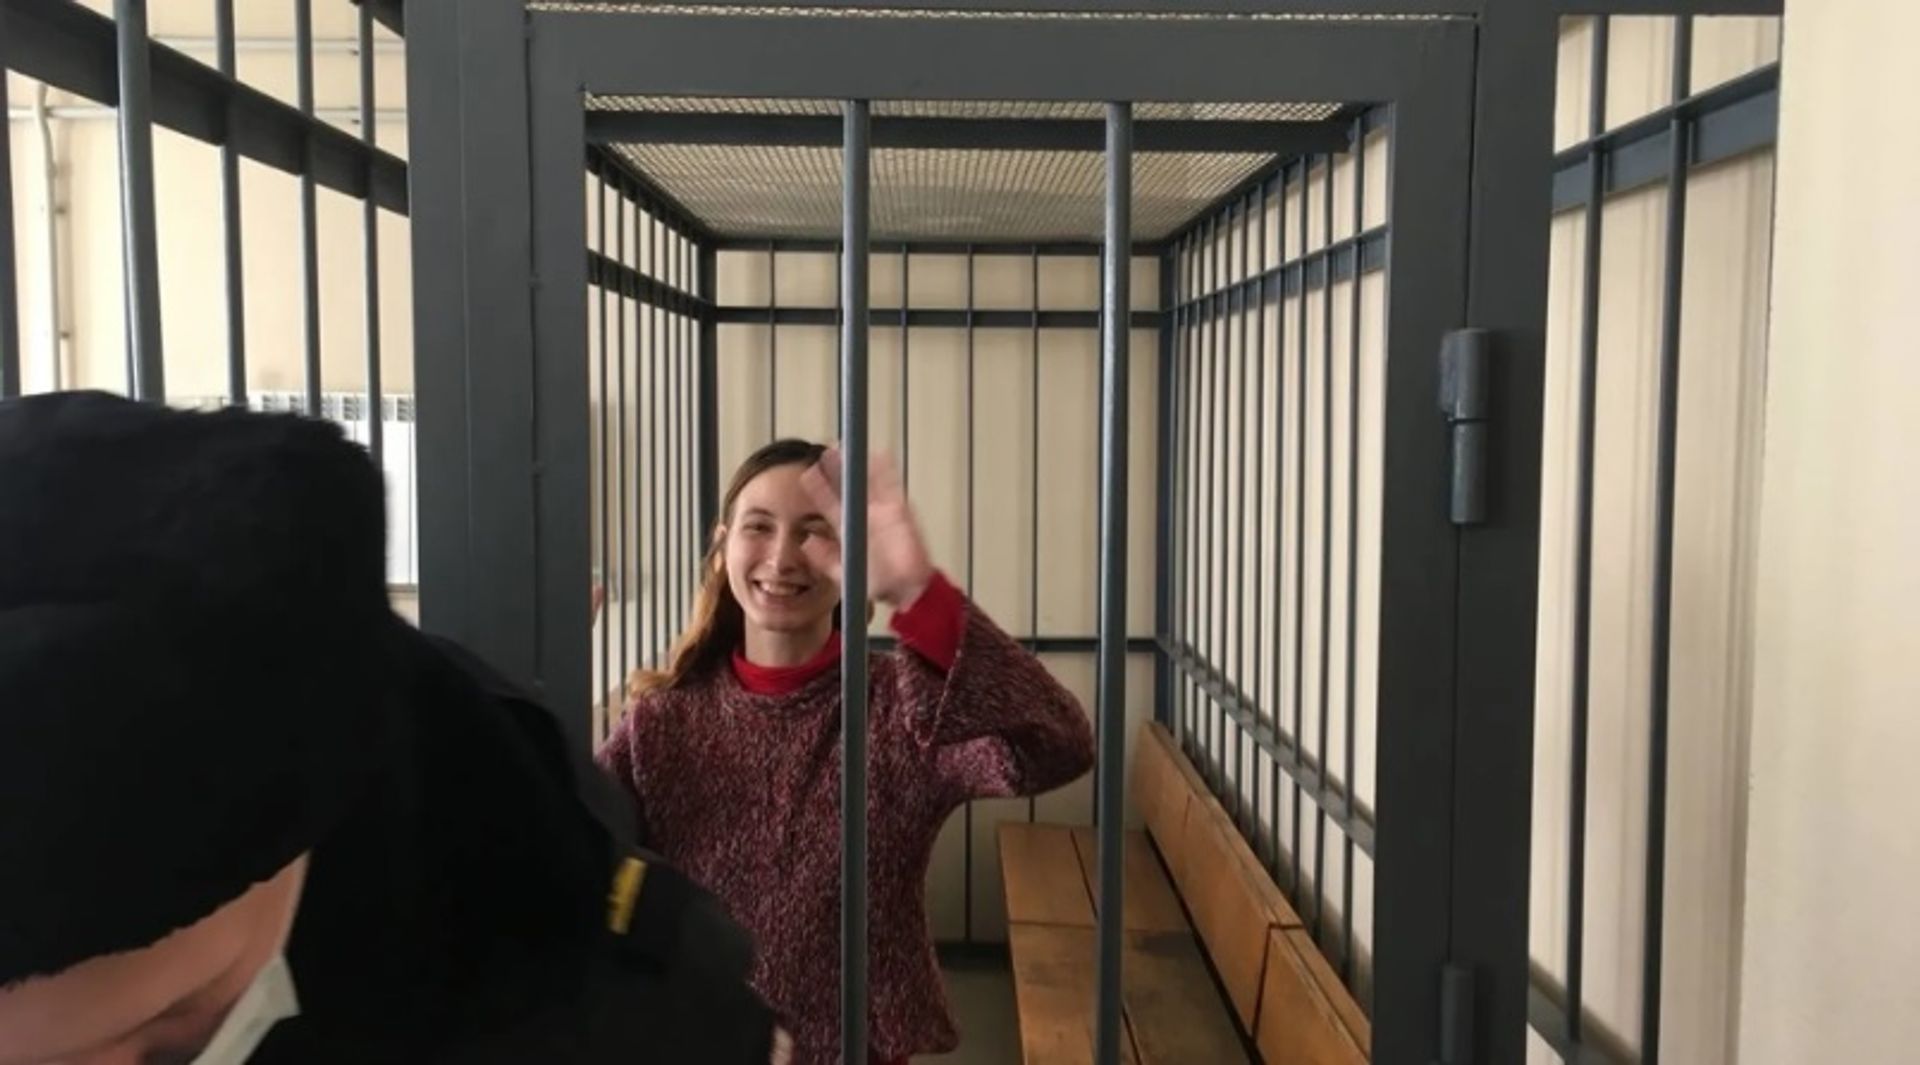 סשה סקוצ'ילנקו נמצאת במעצר לפני משפט

תמונה: דרך ארסני וסנין/טוויטר